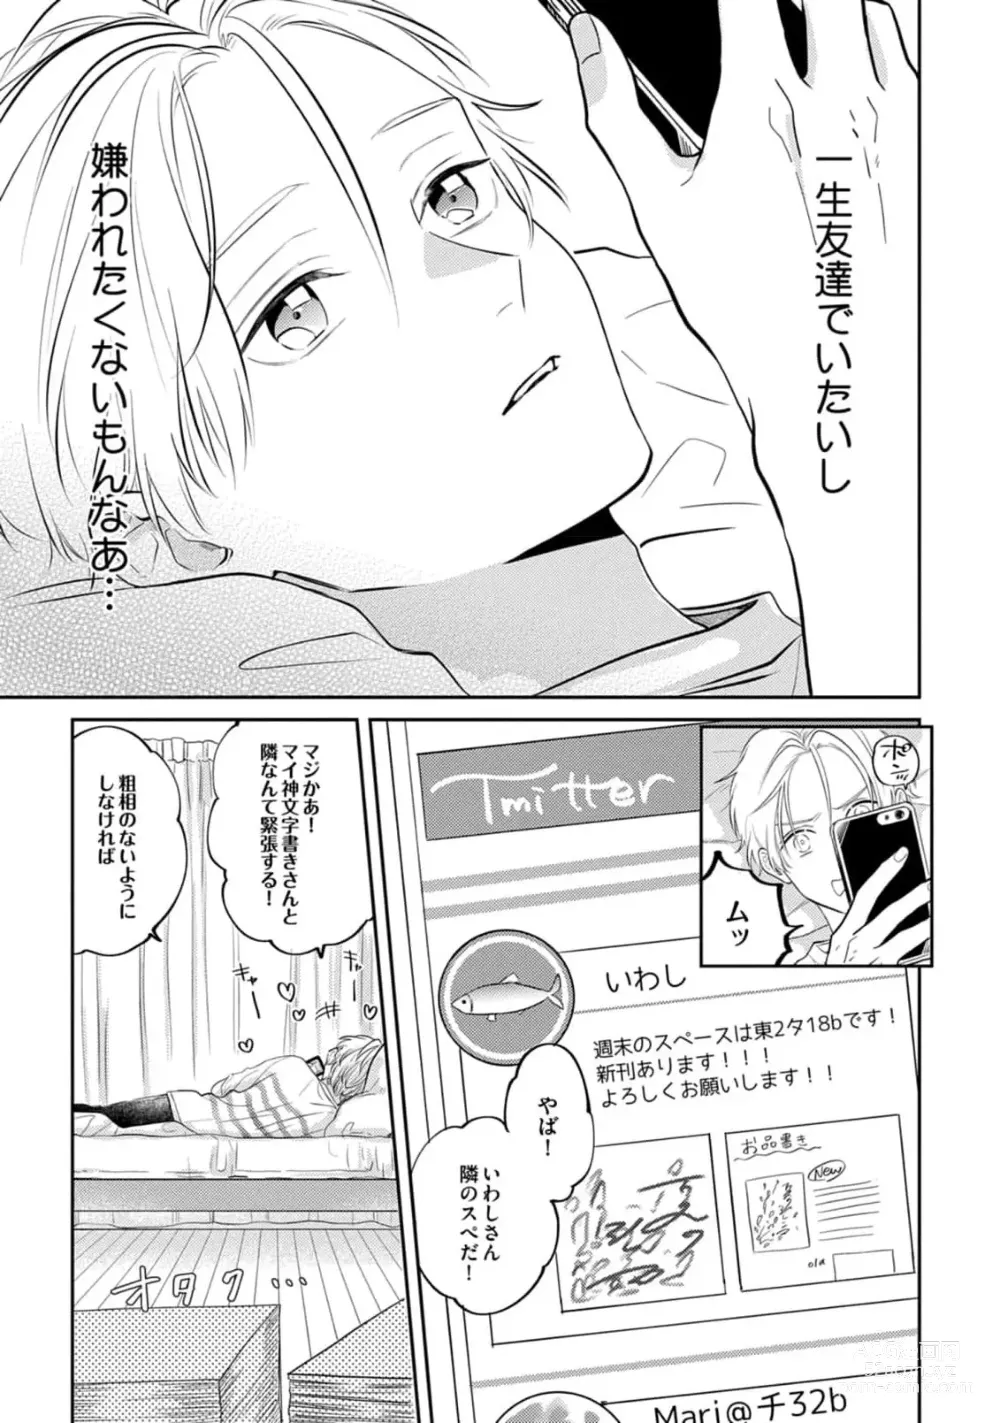 Page 7 of manga Sono-Futari, Kaishaku-Chigai Desu!